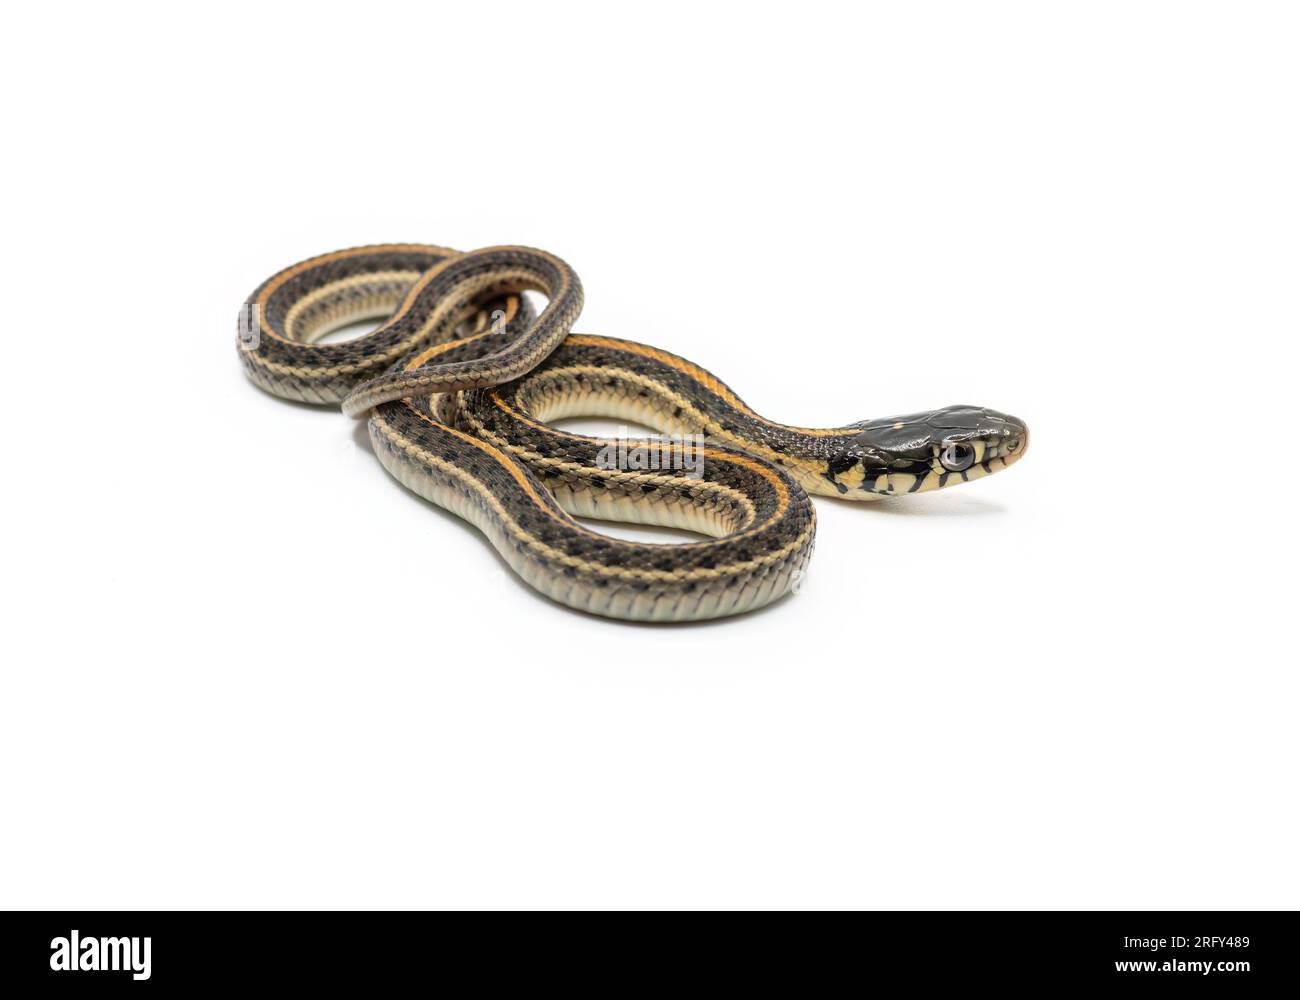 Un beau serpent de jarretière juvénile est isolé et photographié sur un fond blanc. Banque D'Images